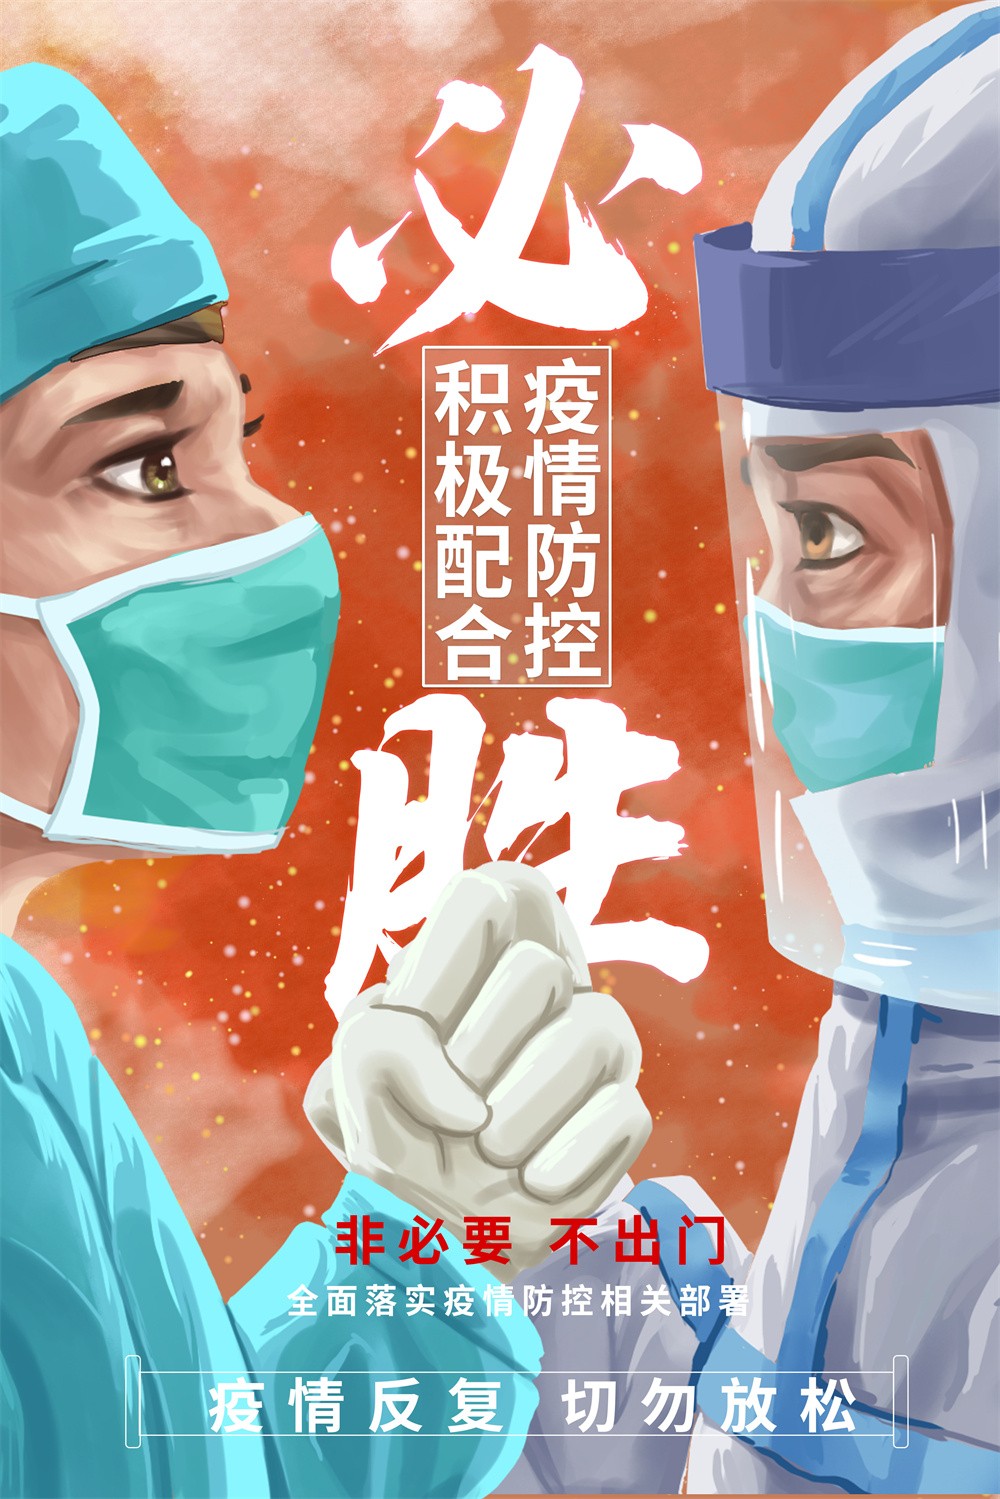 春节疫情防控宣传海报设计 